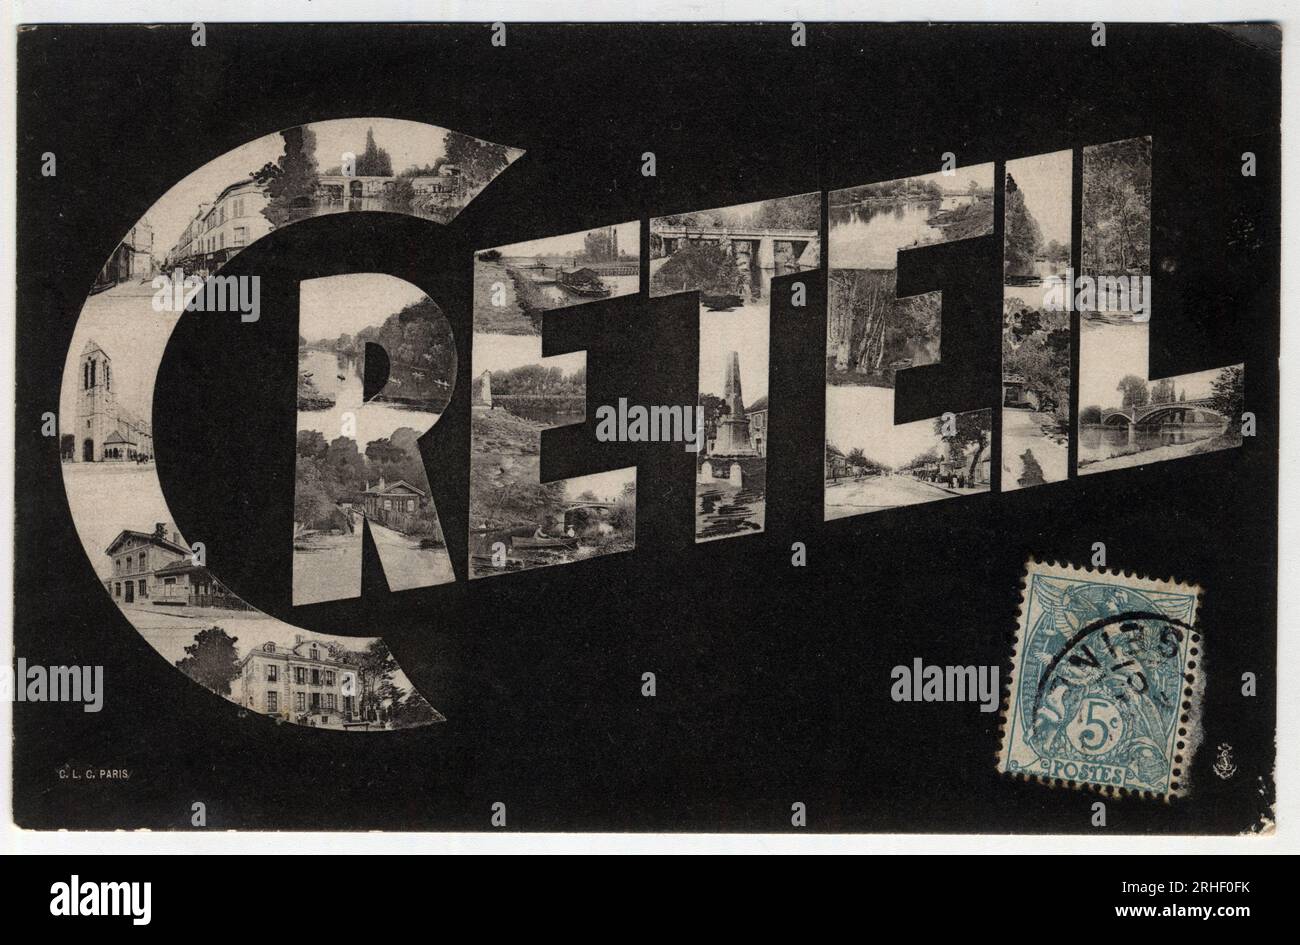 Carte postale avec le nom de la ville de Creteil (Ile de France, Val de Marne), fin 19eme-debut 20eme siecle Stock Photo